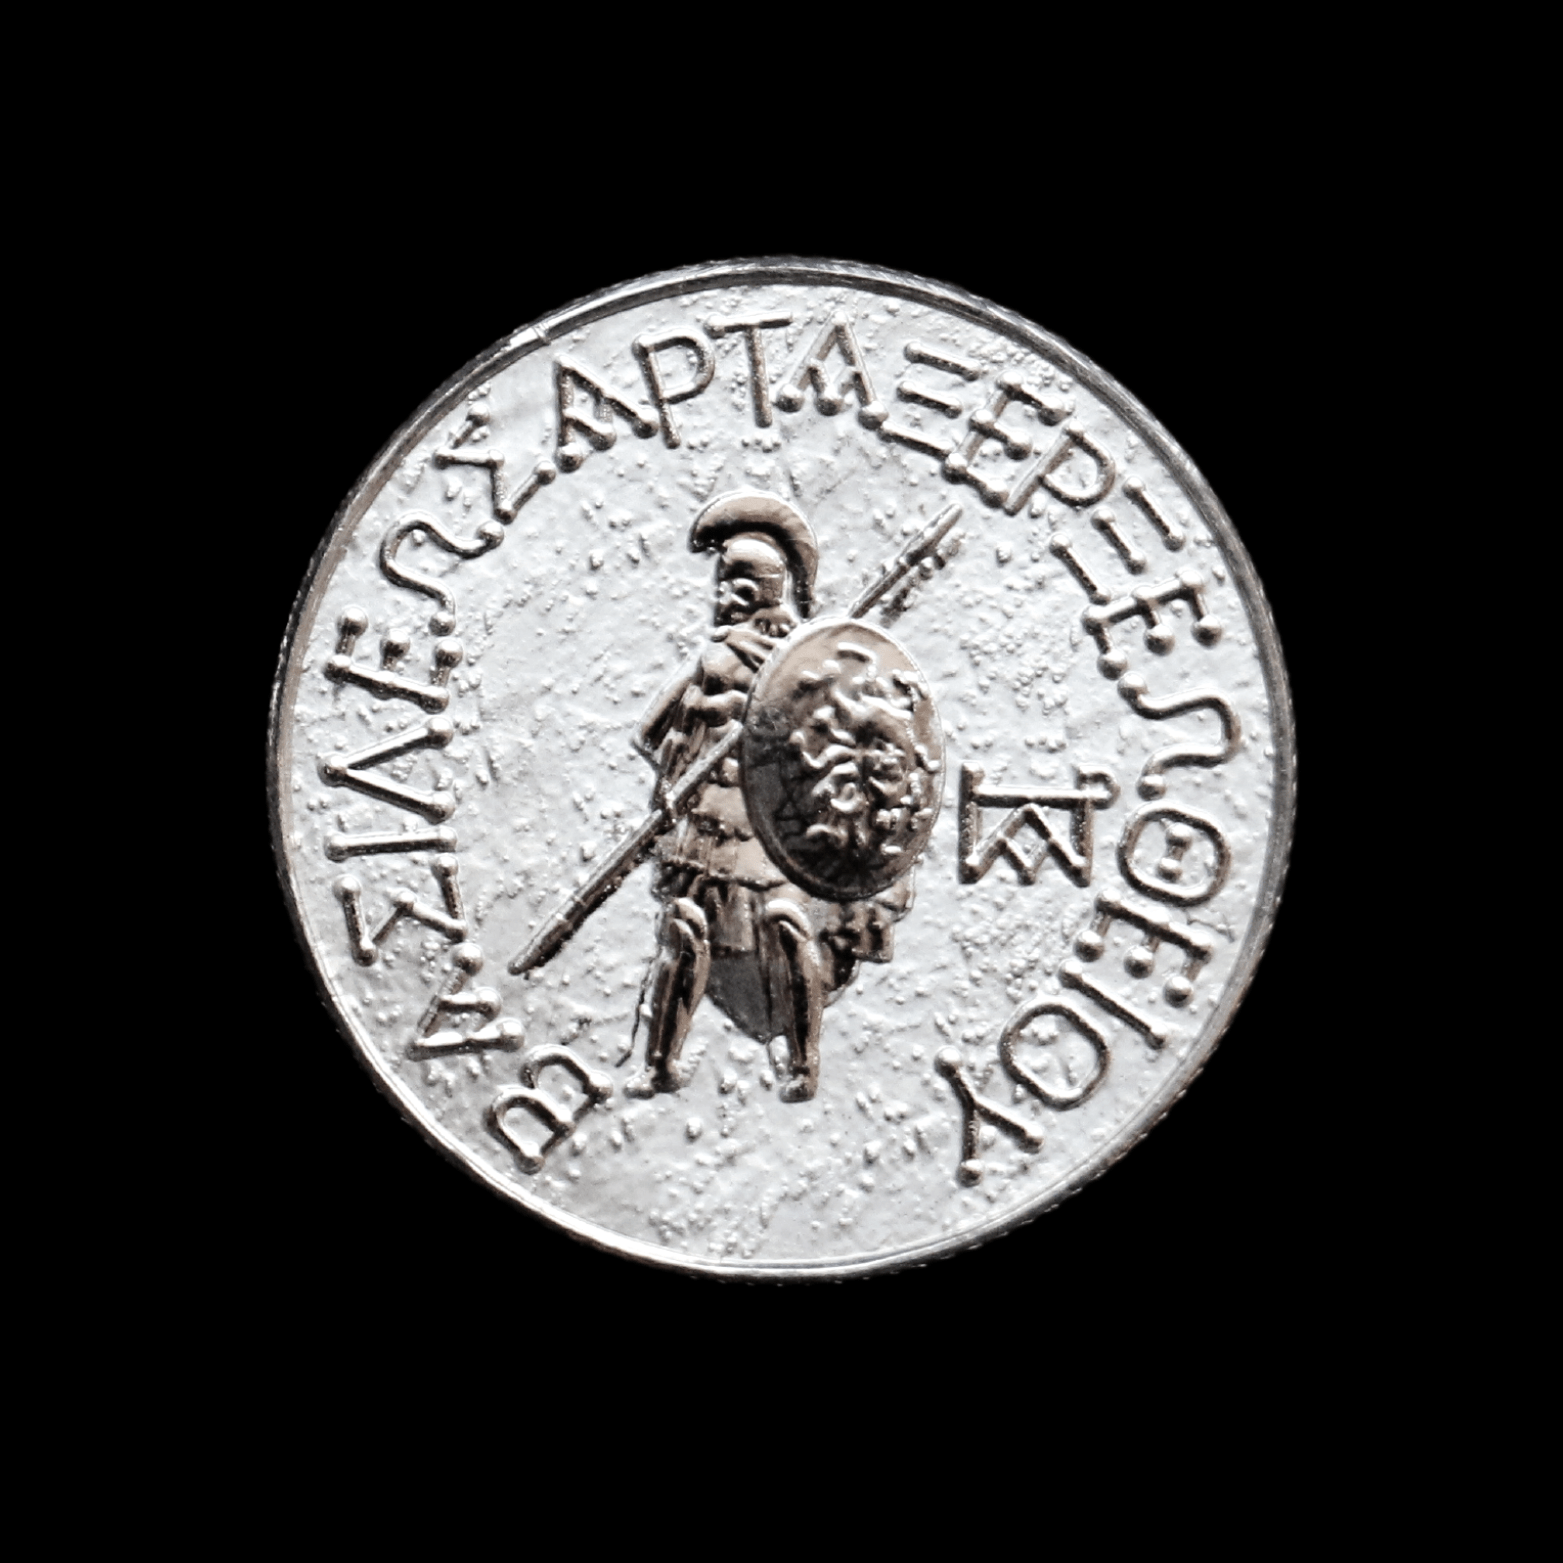 2022 Artaxias II Silver Drachma Coin Pomegranate Mint